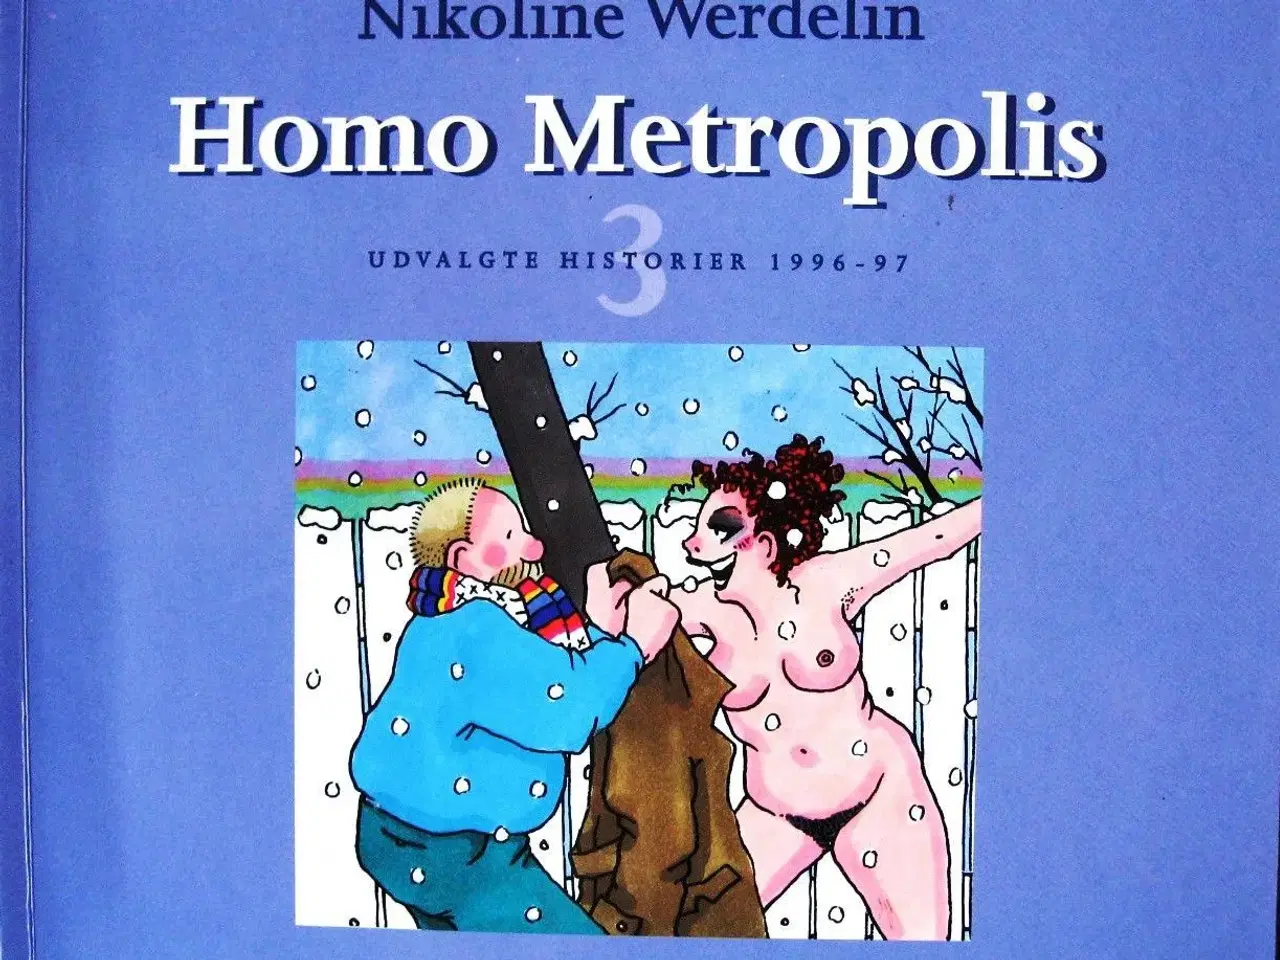 Billede 3 - Homo Metropolis 1, 3, 4 og 5 (humor)